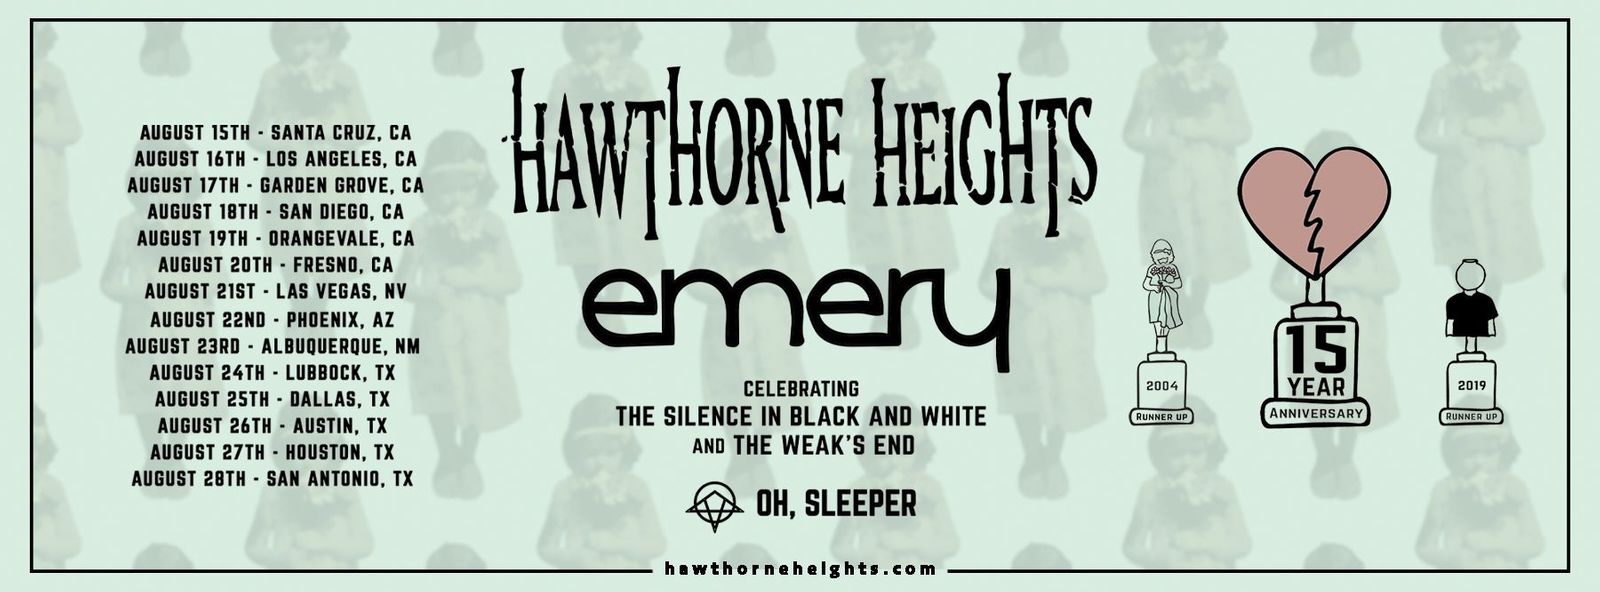 Hawthorne Heights & Emery 15 Year Anniversary